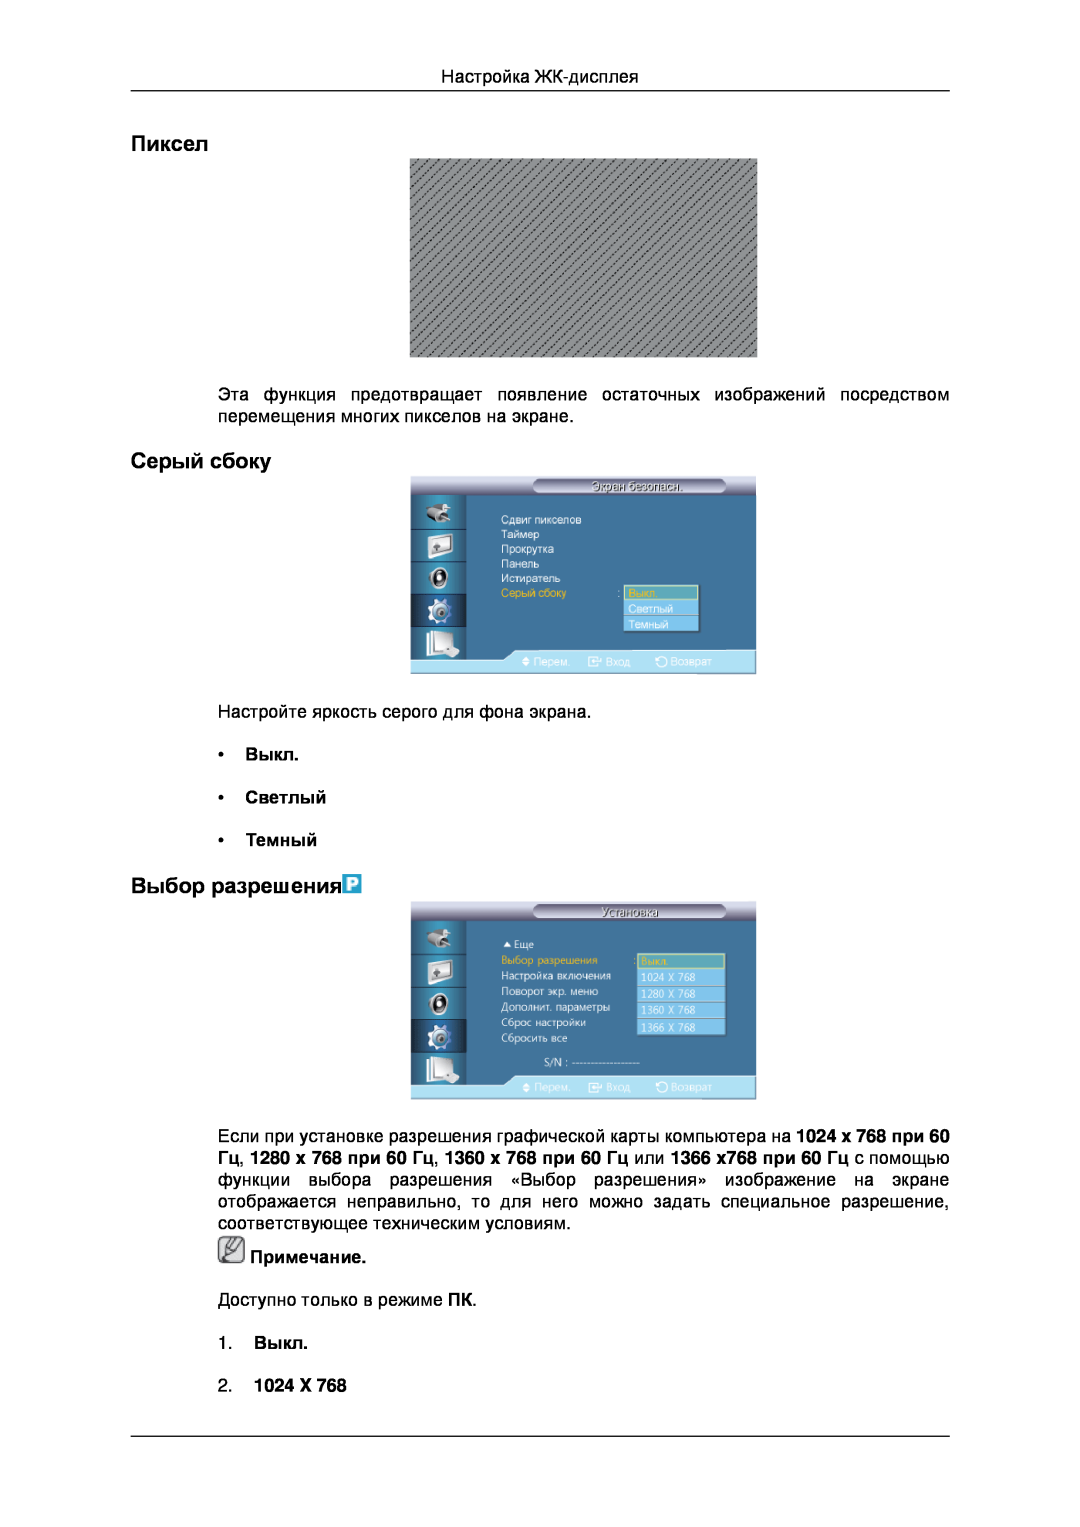 Samsung LH32CRSMBD/EN manual Пиксел, Серый сбоку, Выбор разрешения, Выкл Светлый Темный, 1. Выкл 2. 1024 X, Примечание 